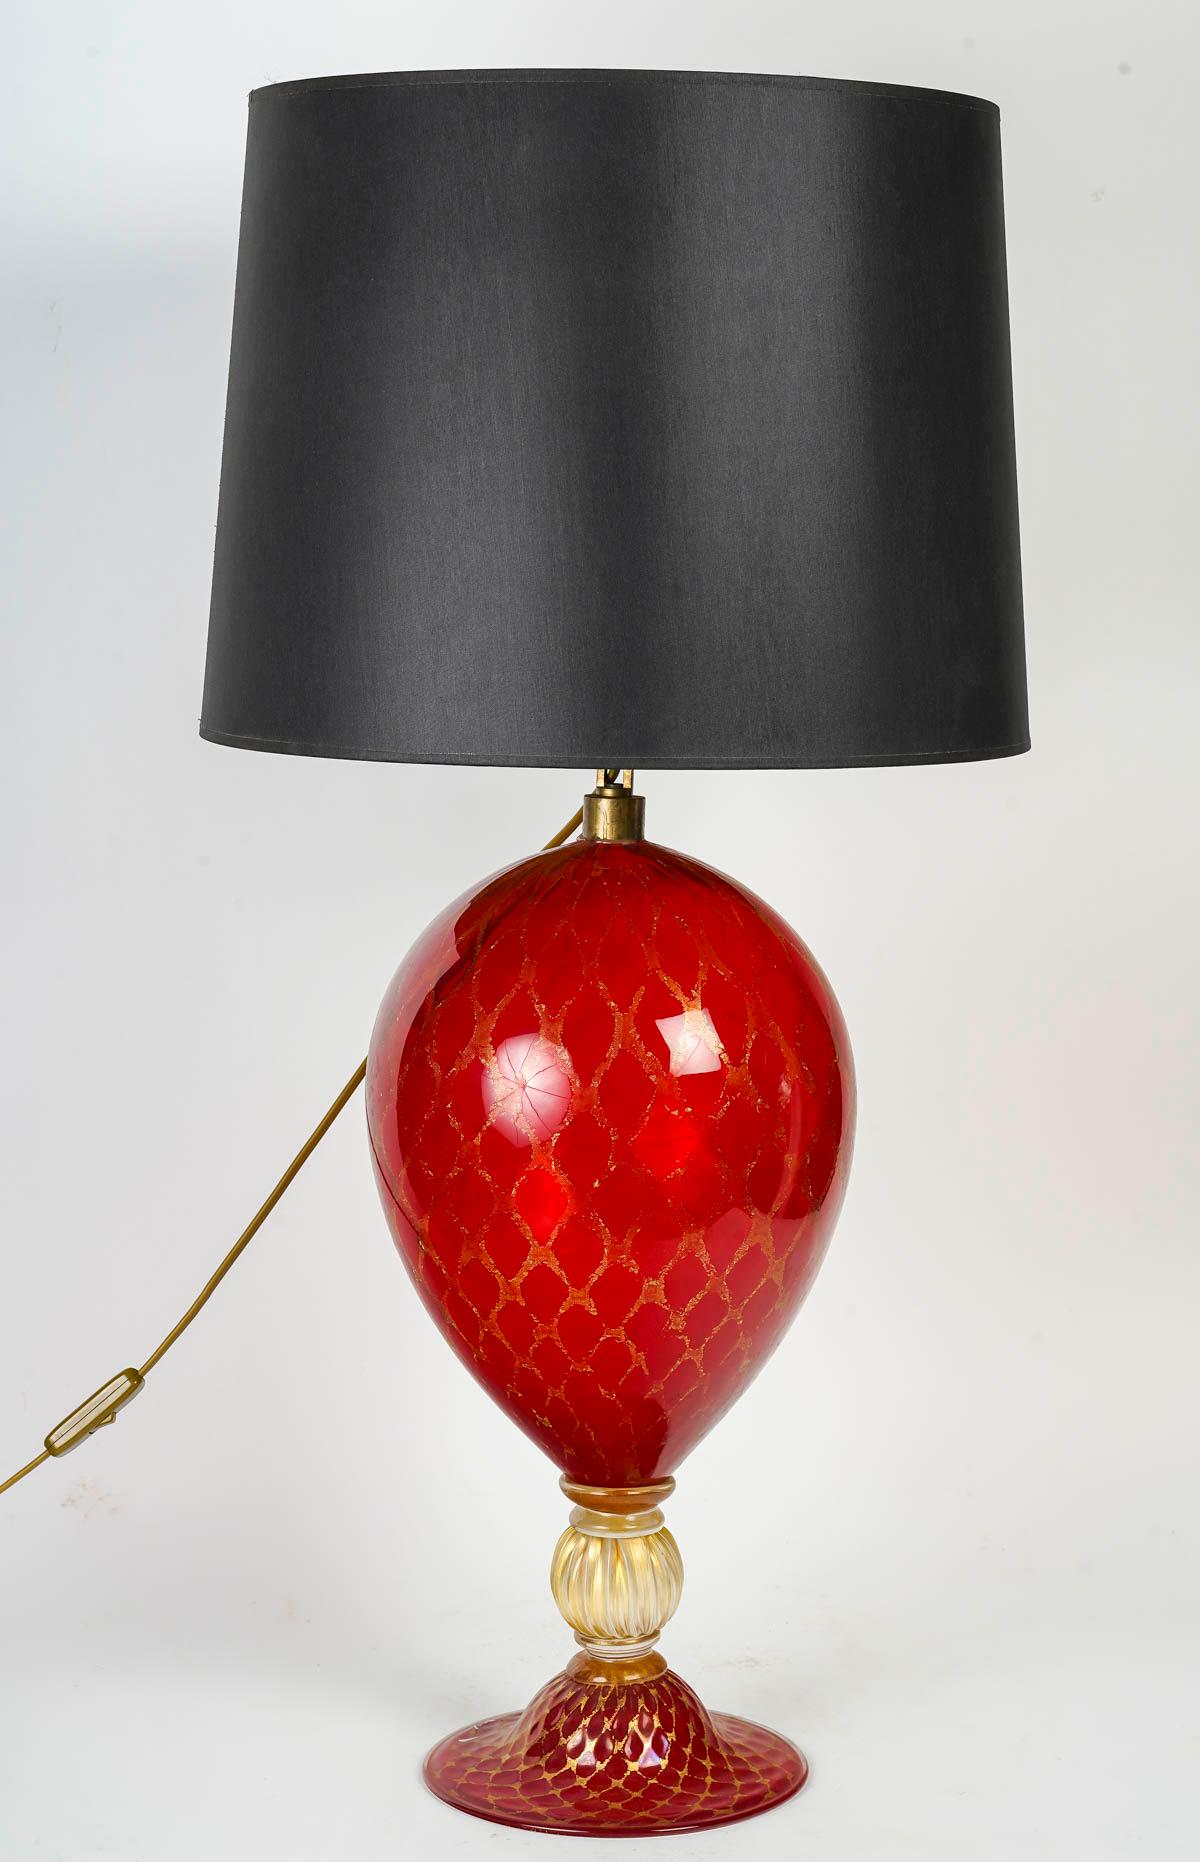 Pair of Murano Glass Table Lamps, Circa 1950.

Pair of table lamps in red Murano glass with gold thread, circa 1950.
Total: h: 82cm, d: 40cm
Lamp base: h: 61cm, d: 21cm